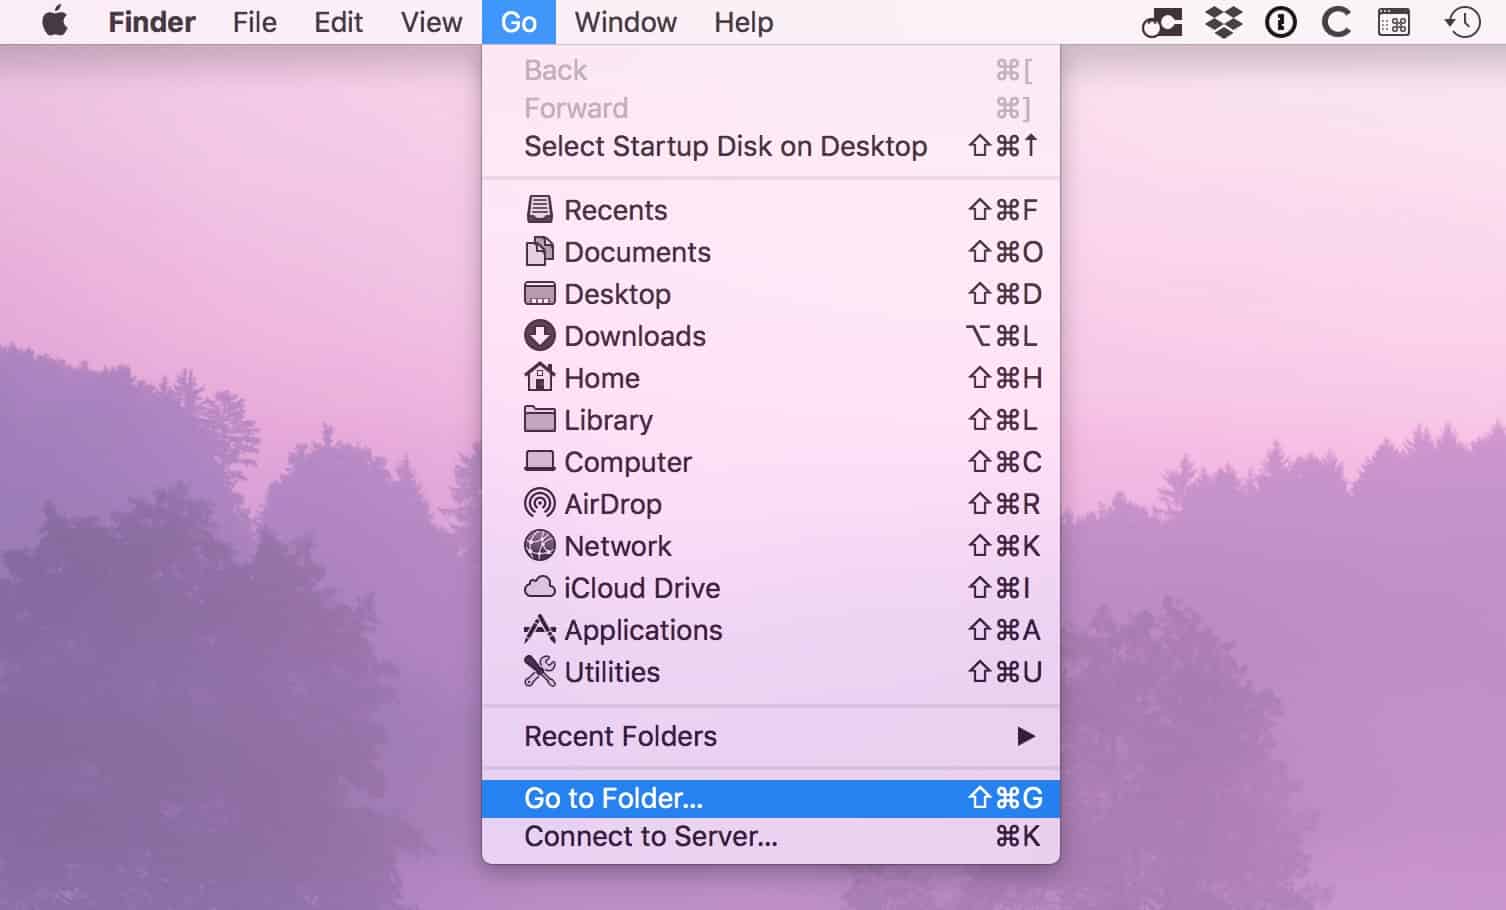 "Go" Menu in macOS Finder showing Go to Folder option